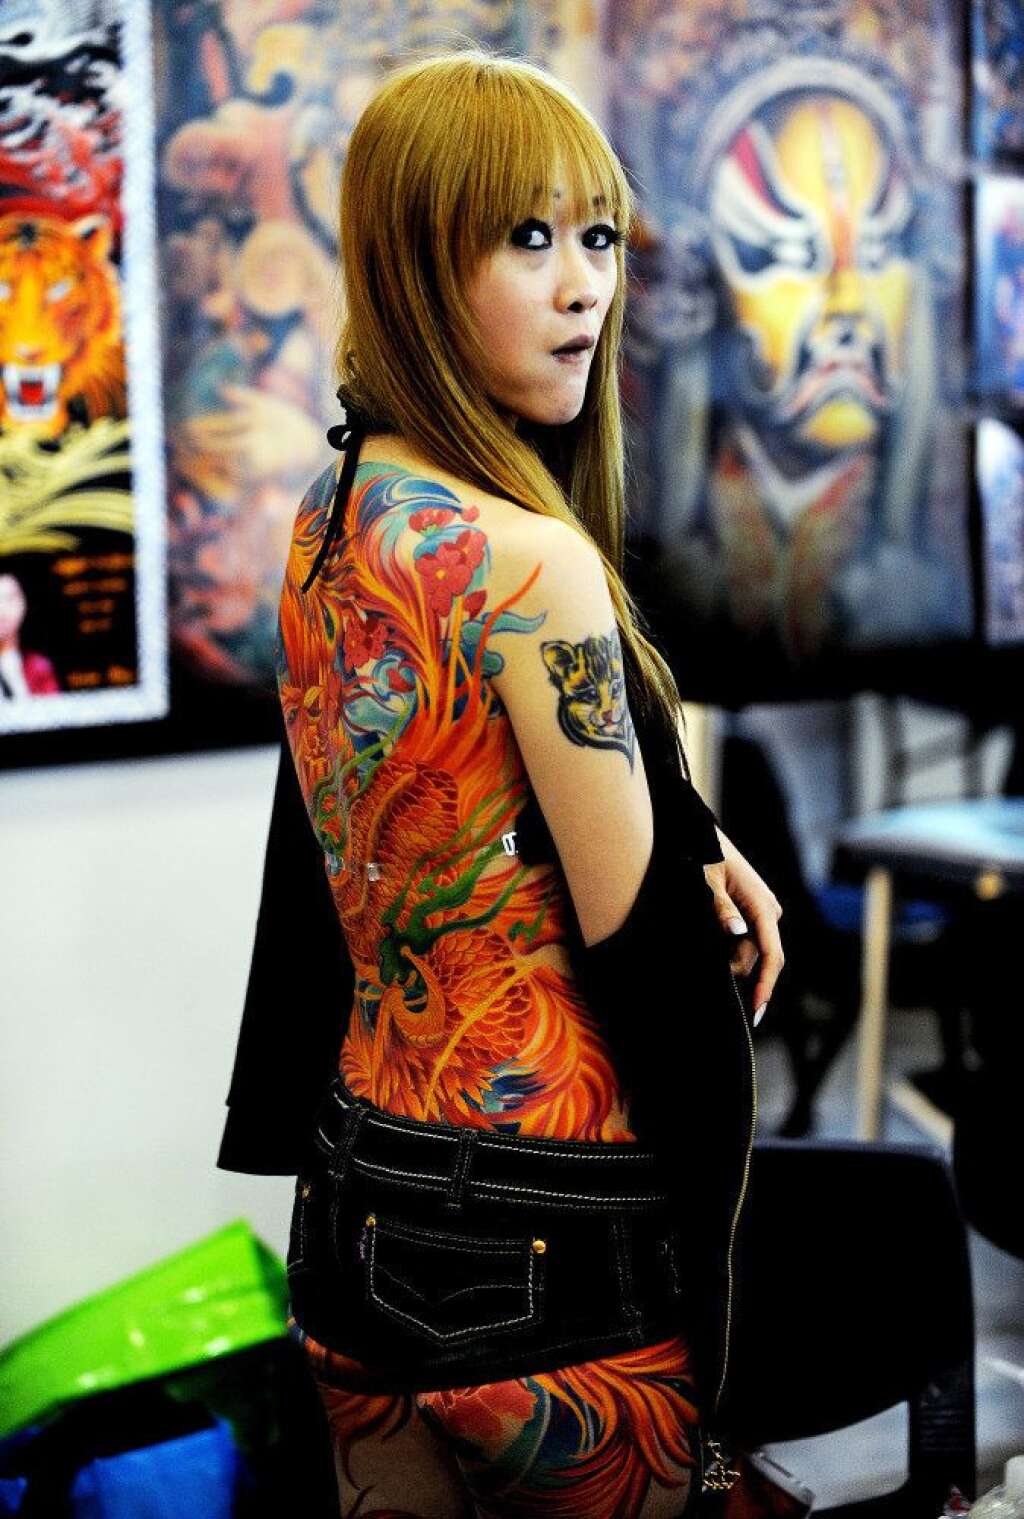 Les tatouages les plus fous - Salon du tatouage et de l'art corporel de Sydney, mars 2011.